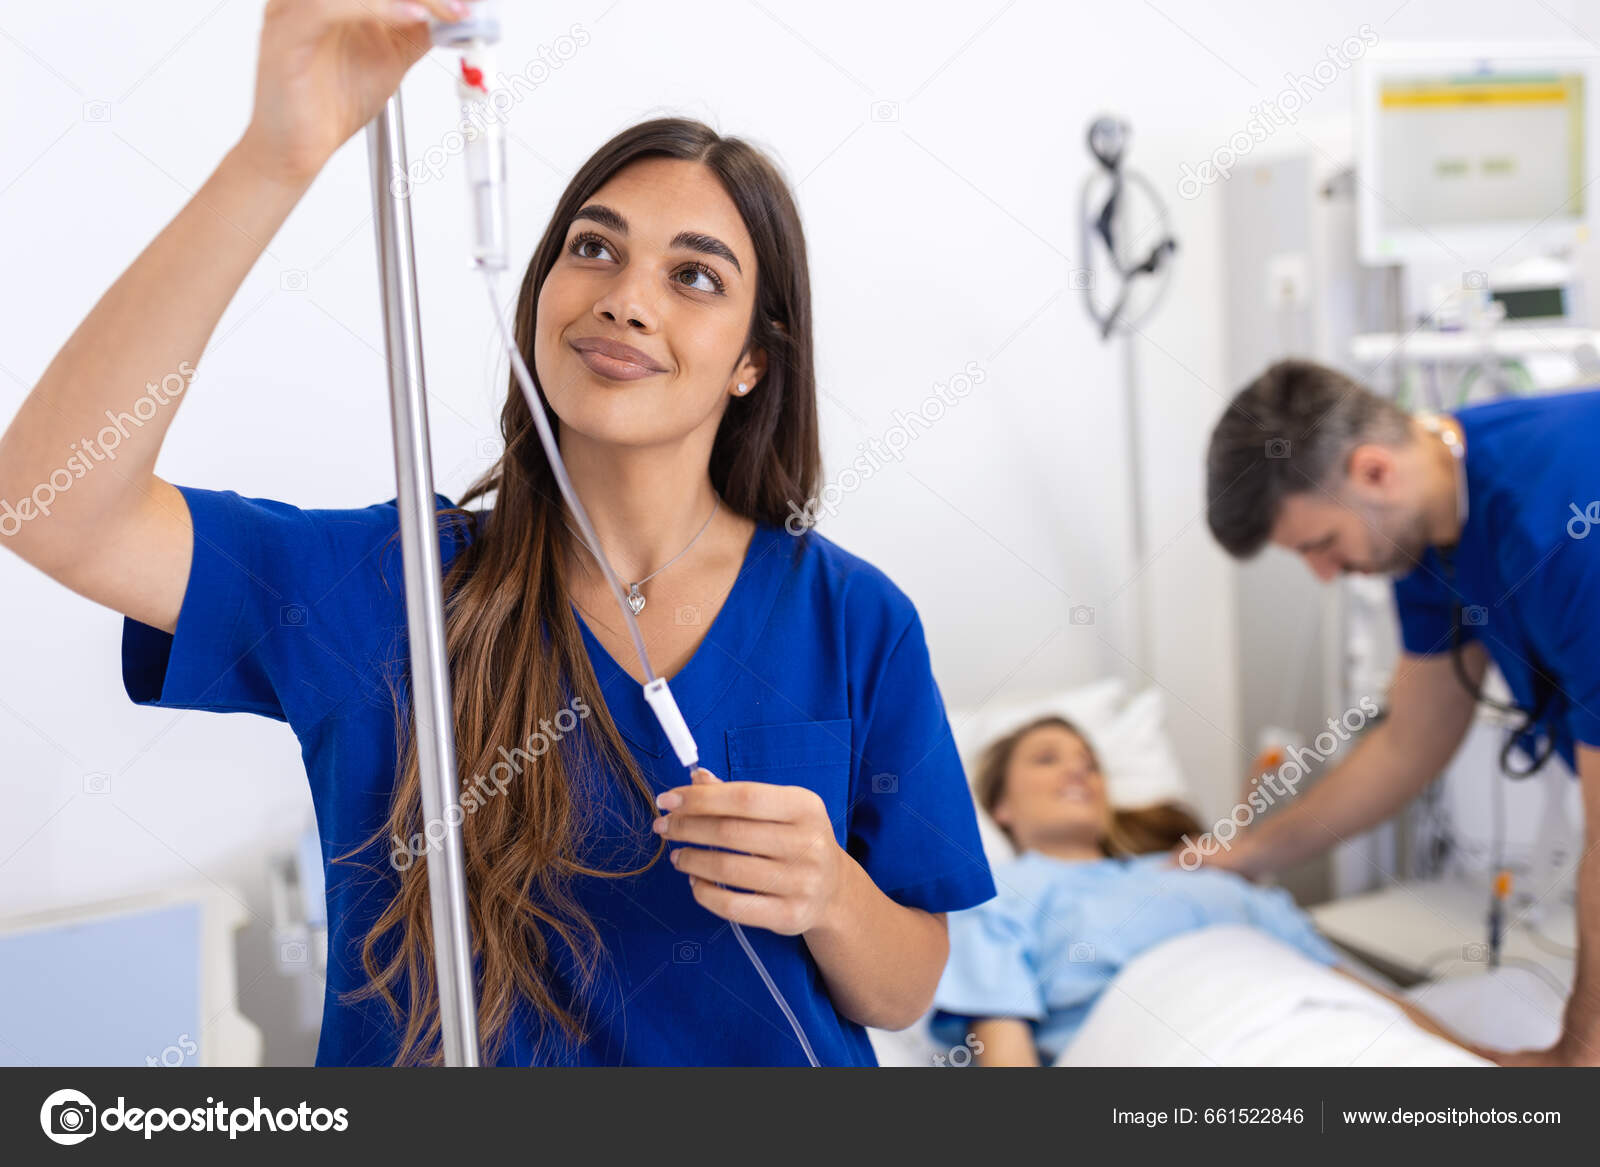 Mavi Önlük Giymiş Genç Kadın Anestezi Uzmanı Serumu Hastane Odasına stok  fotoğrafçılık ©royalty, telifsiz resim #661522846